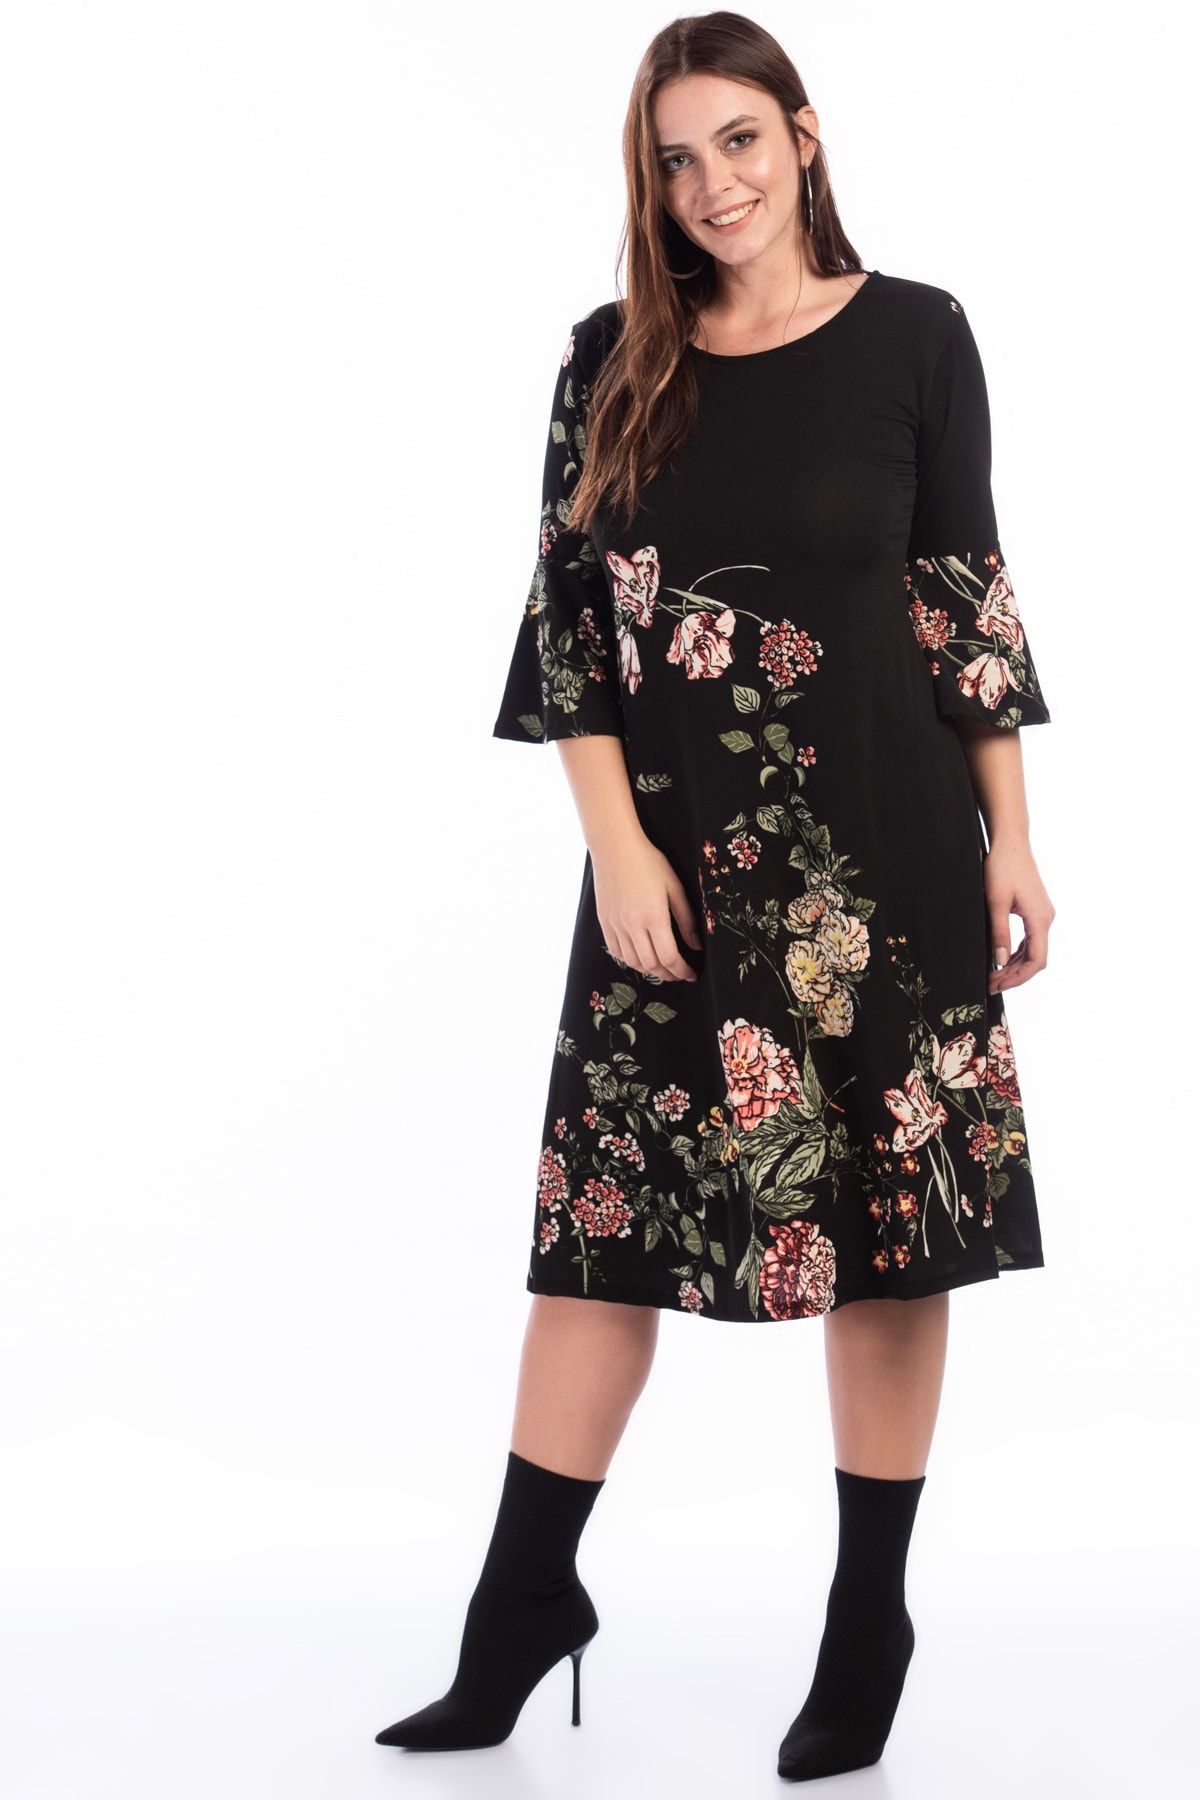 Alesia Kadın Siyah Çiçek Desenli Krep Elbise Btx003.